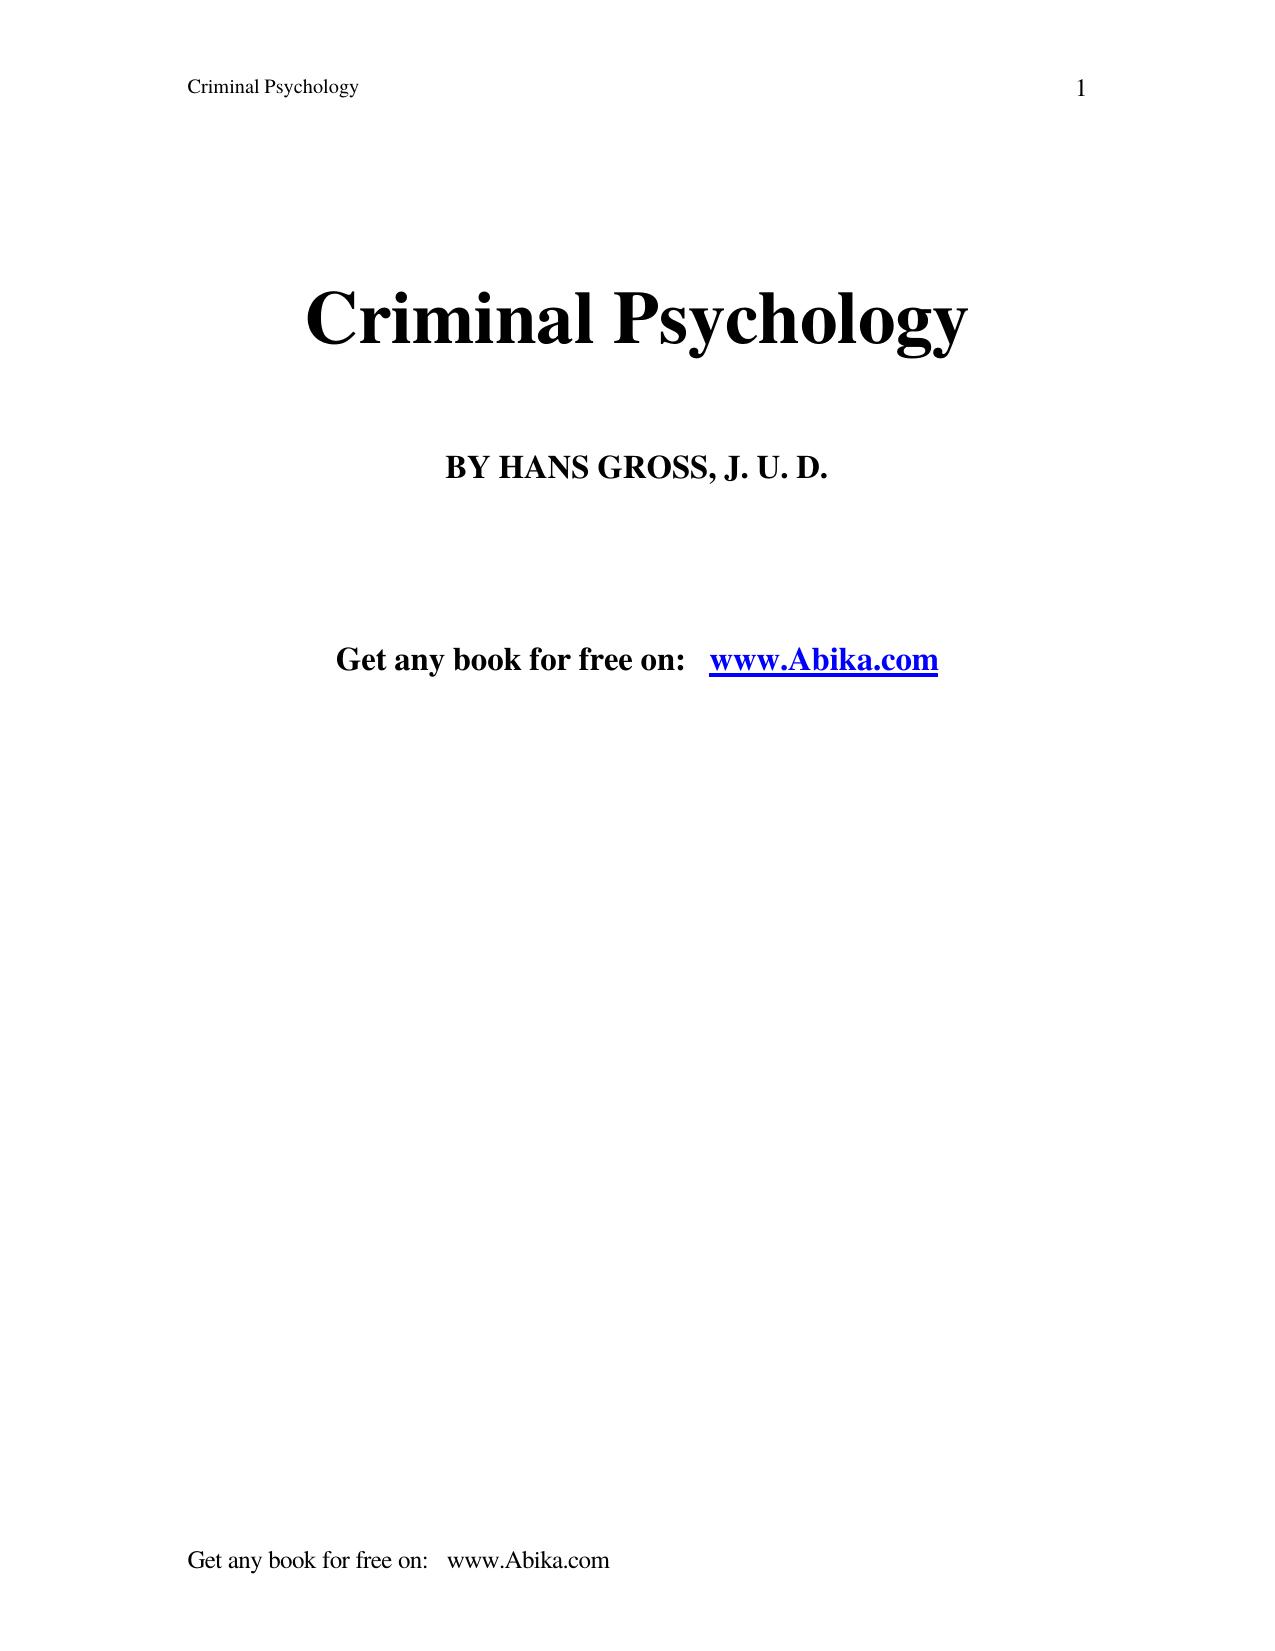 Criminal Psychology by Default